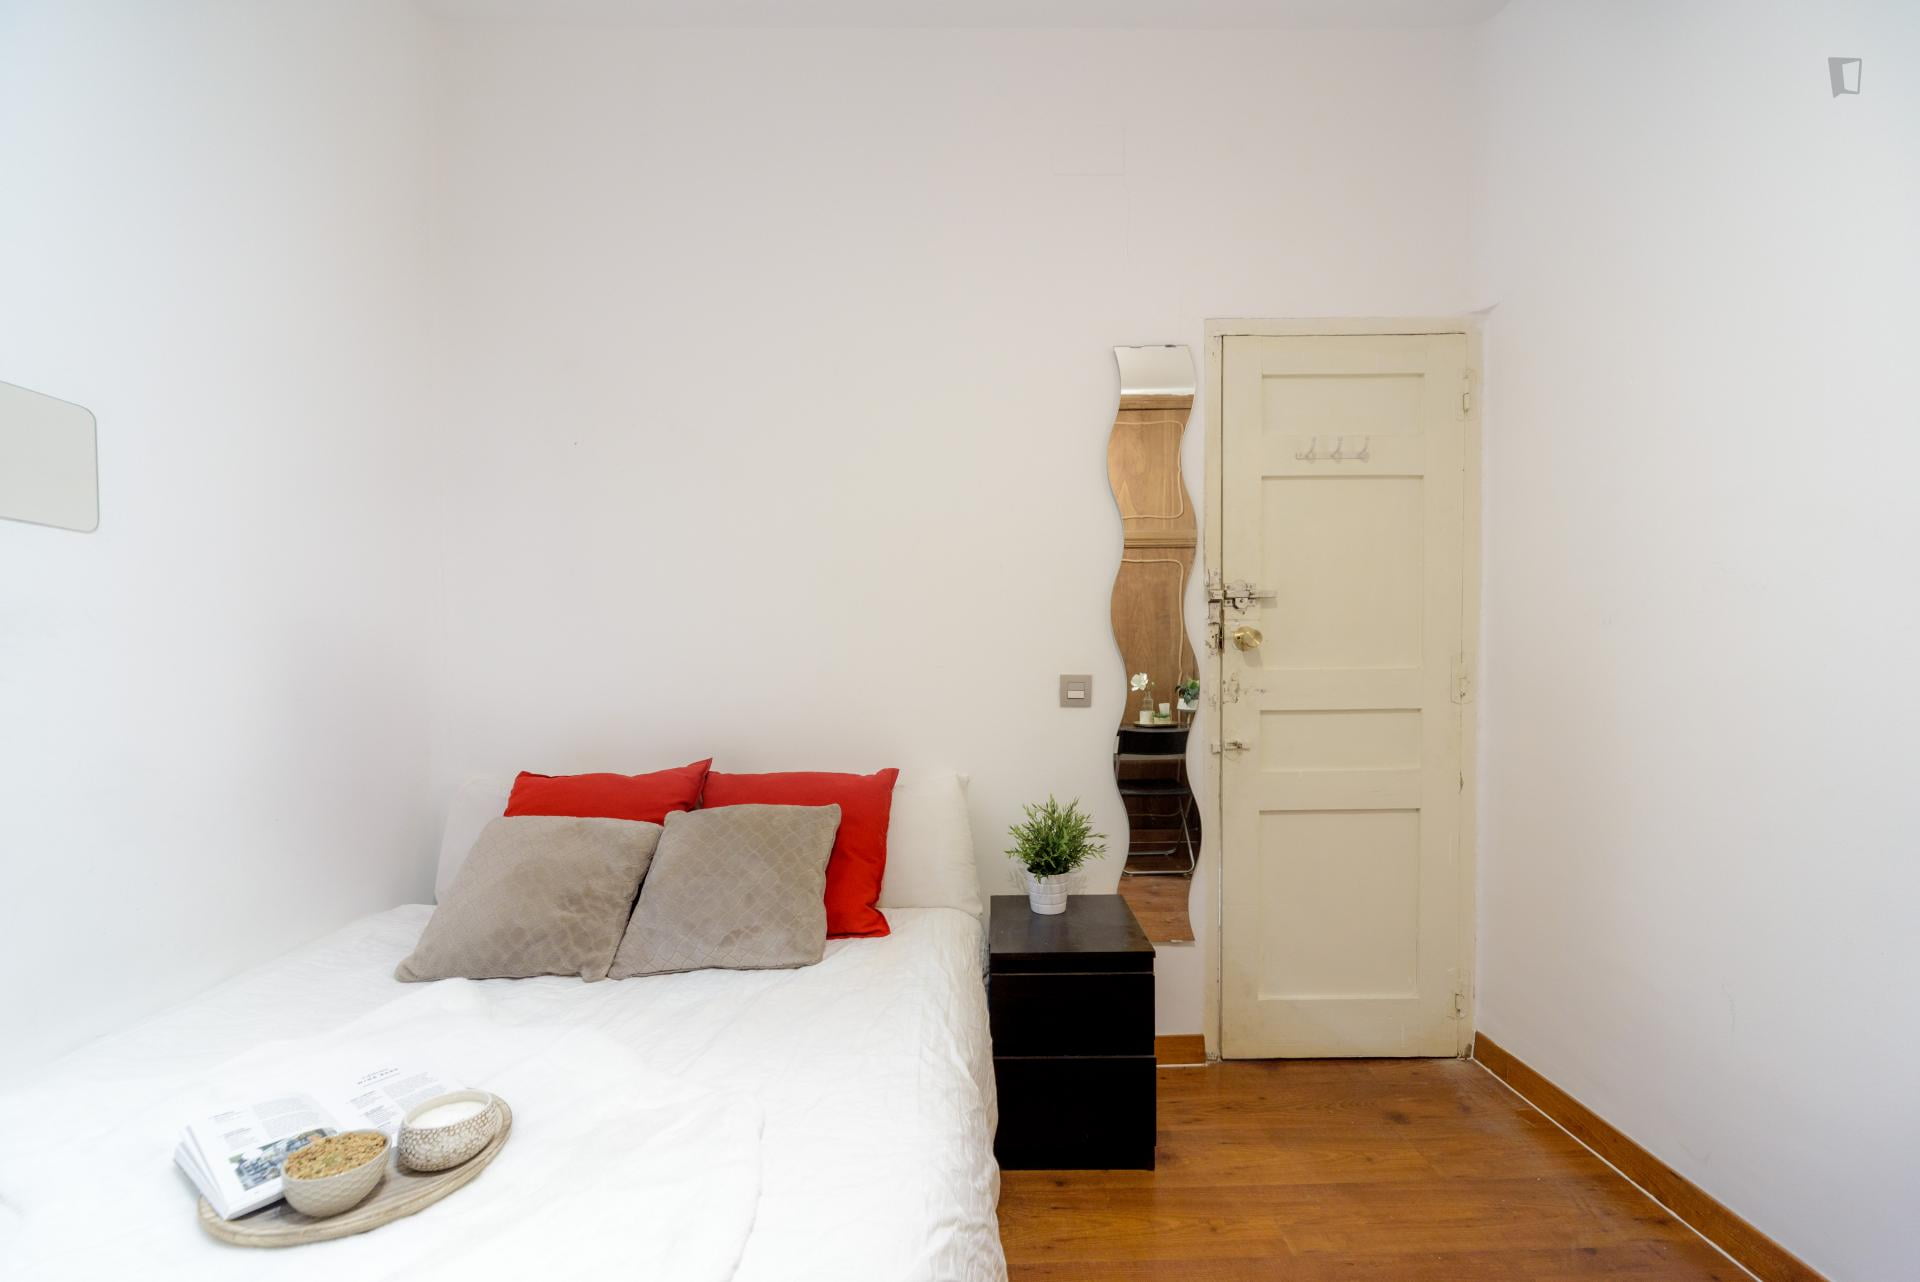 Bailen - Single bedroom in a shared flat